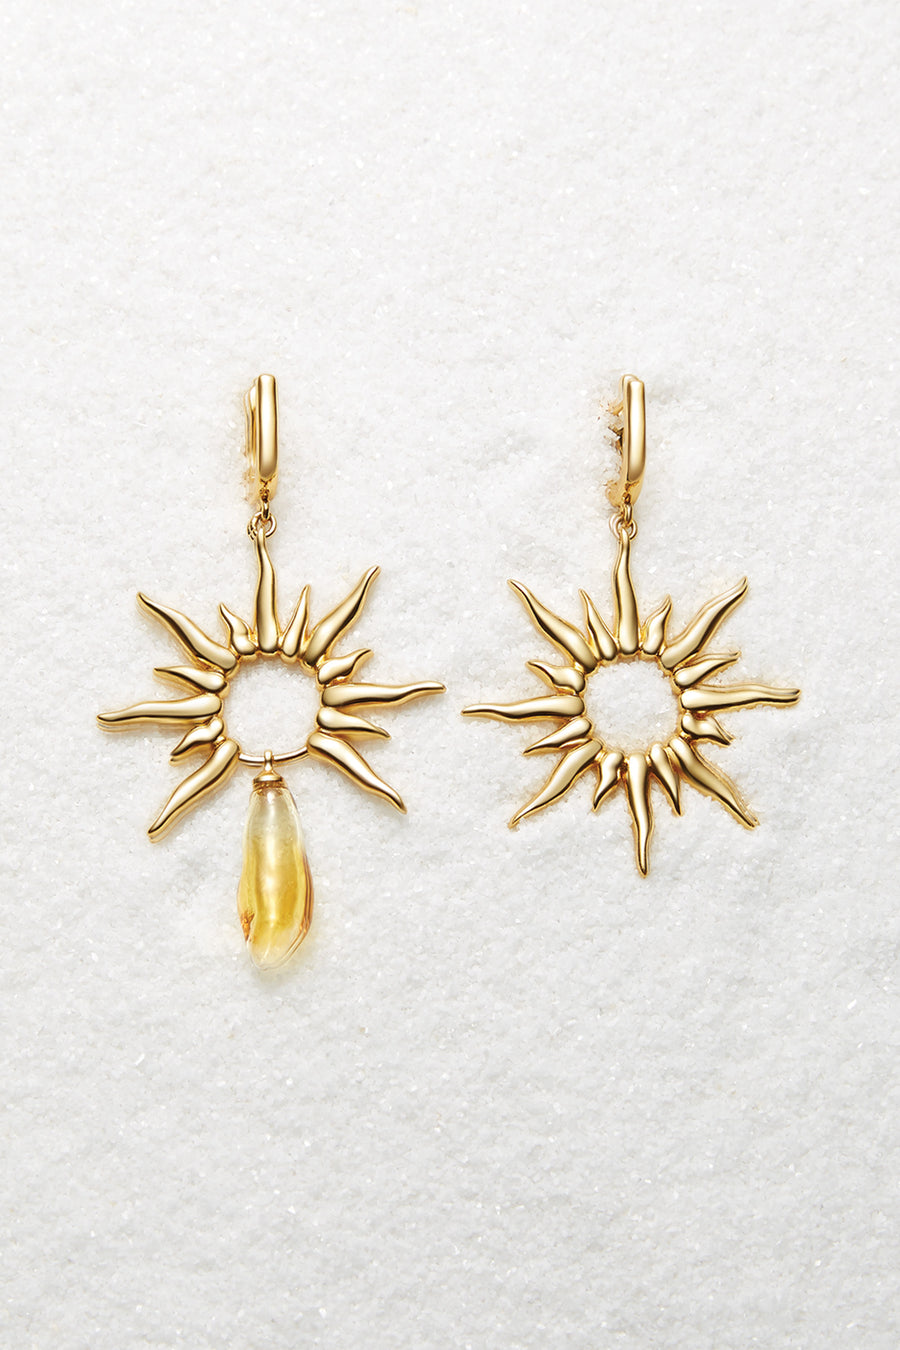 Apollo Yellow Gold Earrings